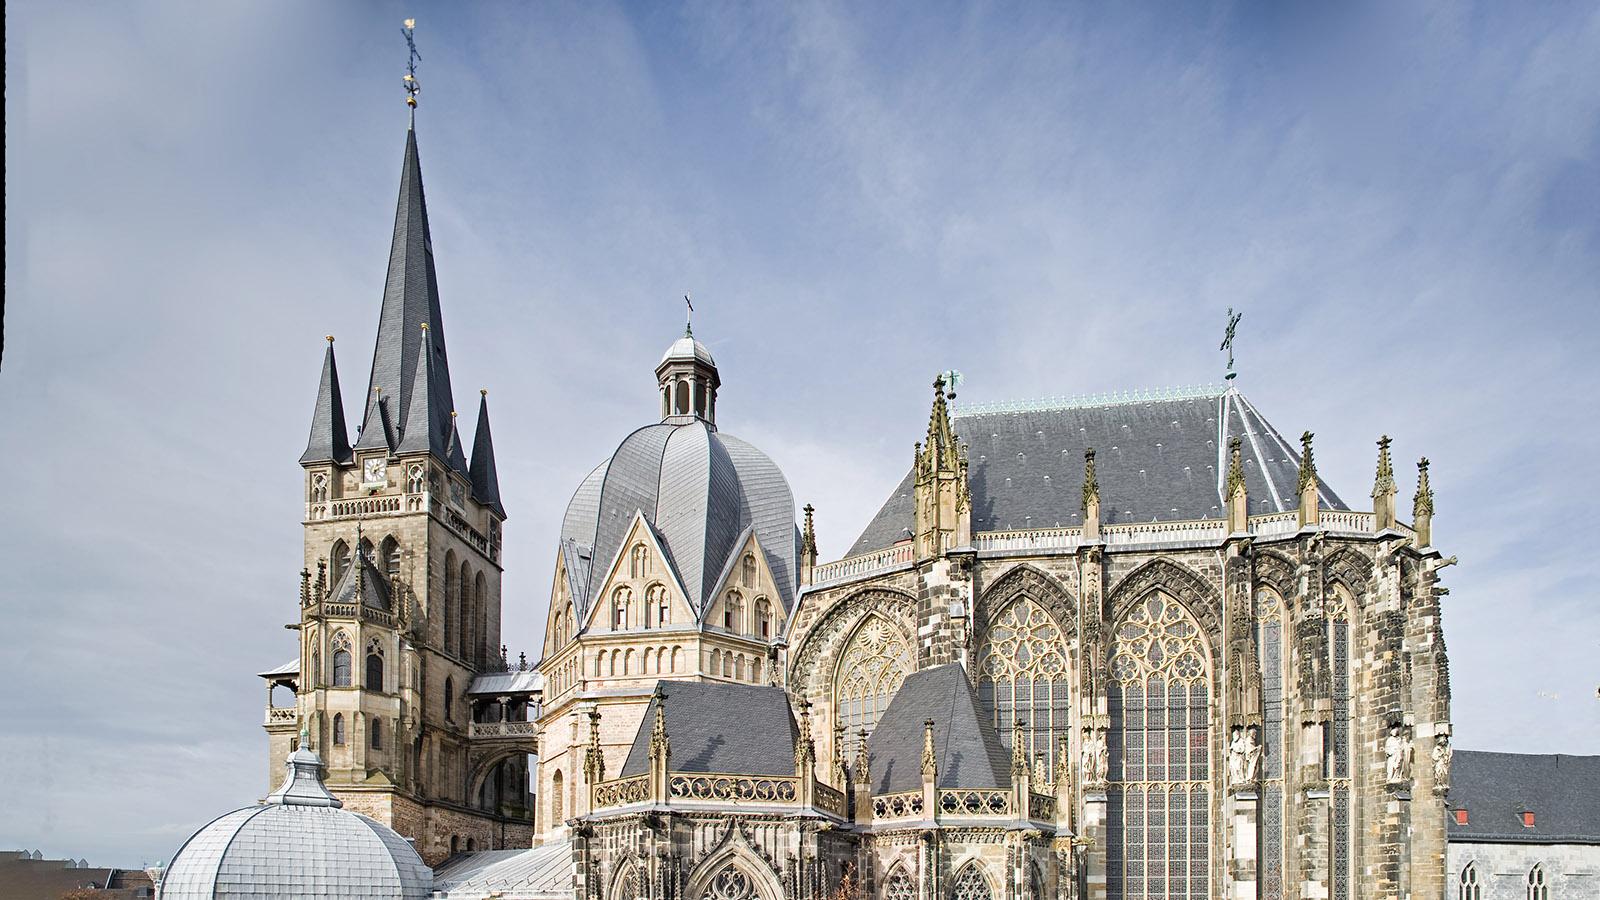 Der Aachener Dom von außen. Foto: Pressebild der Stadt Aachen (www.medien.aachen.de), Fotograf: Peter Hinschläger.